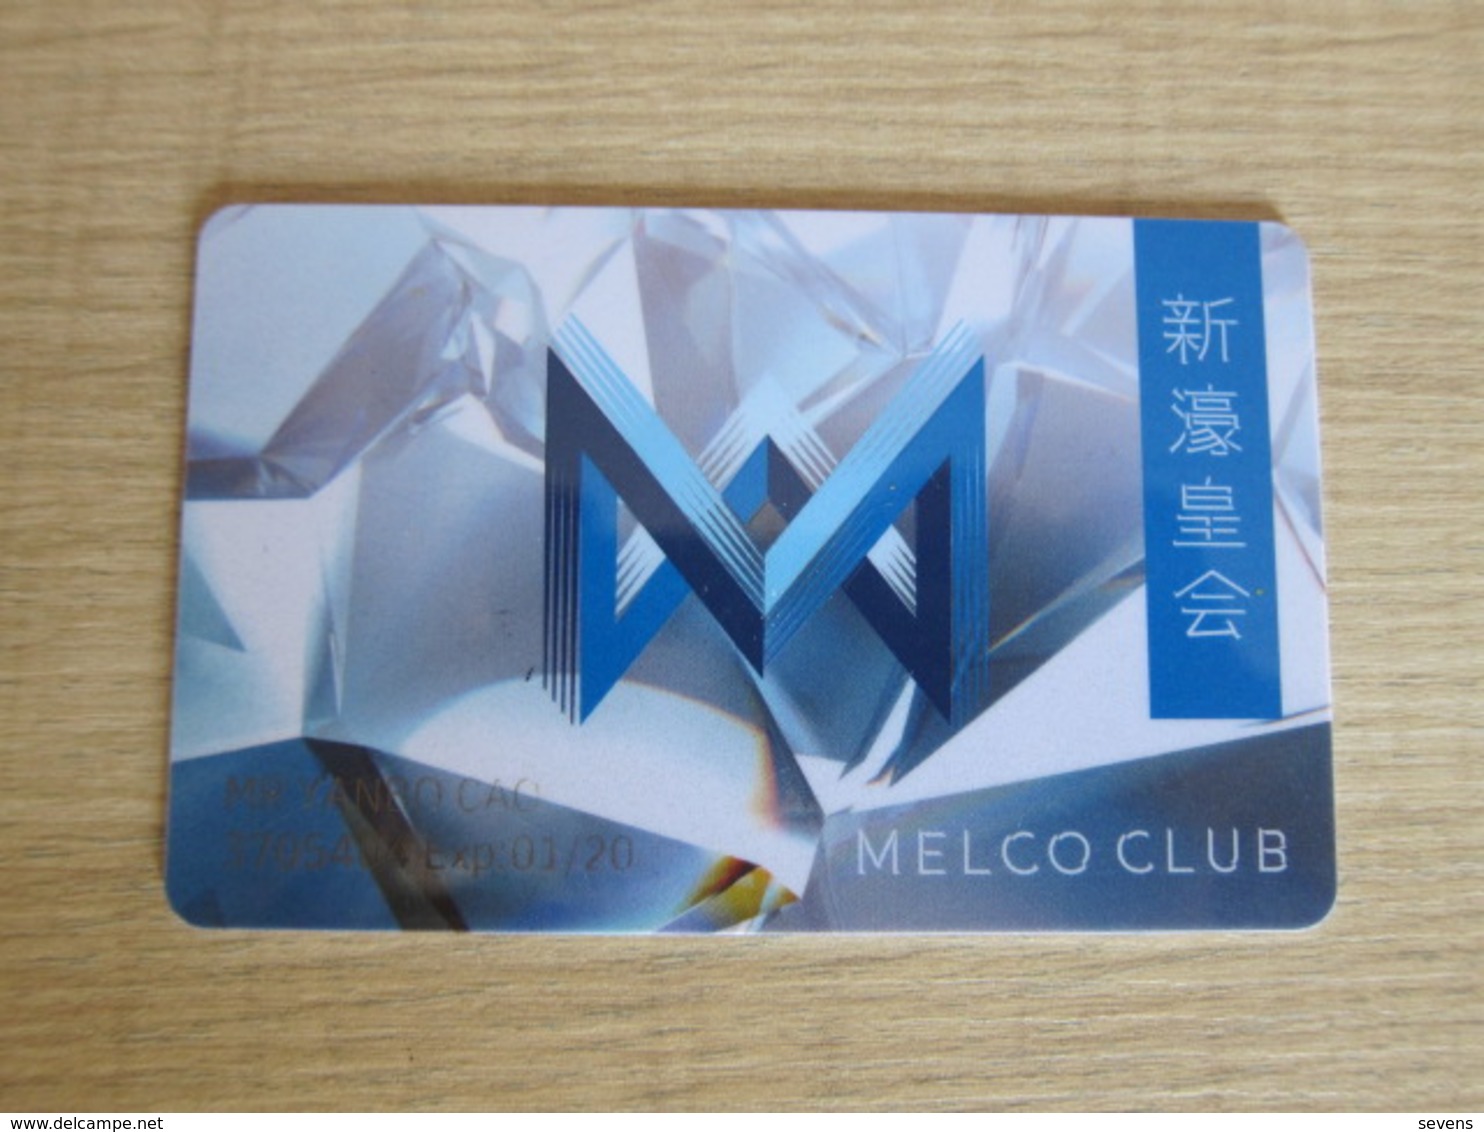 Melco Club, Macao - Casino Cards